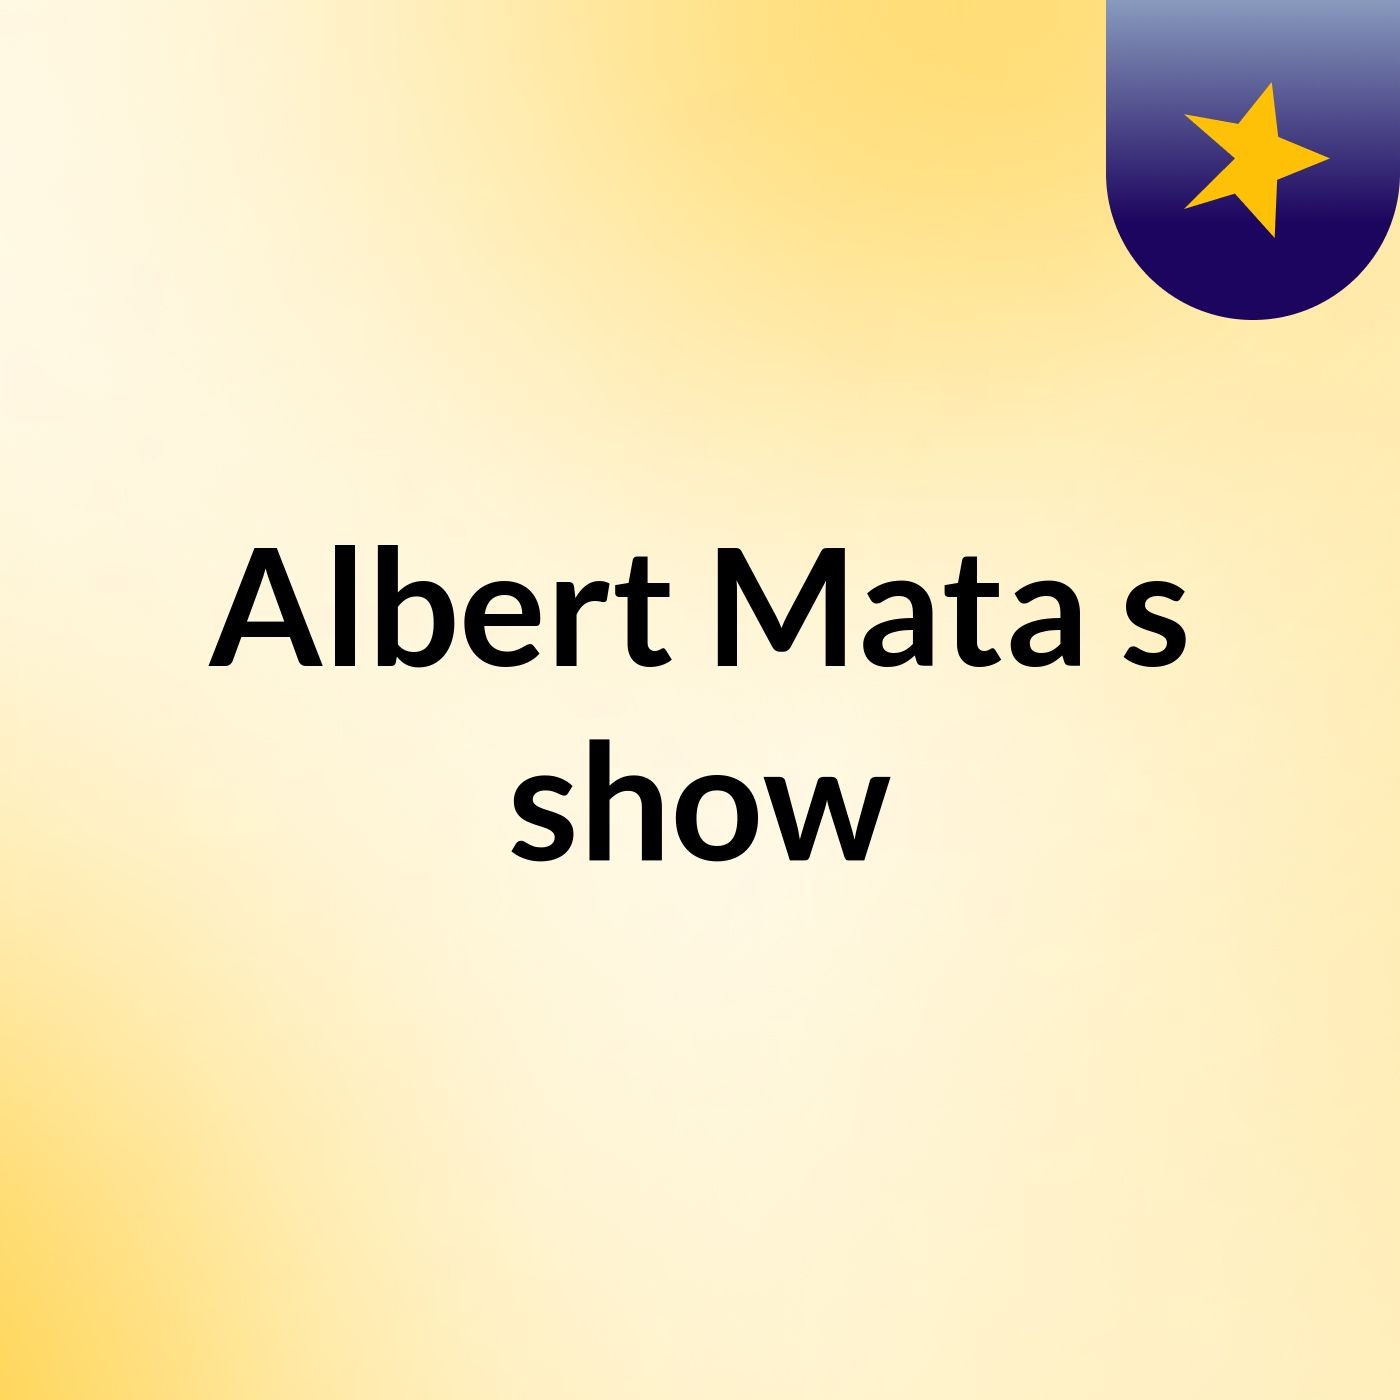 Albert Mata's show